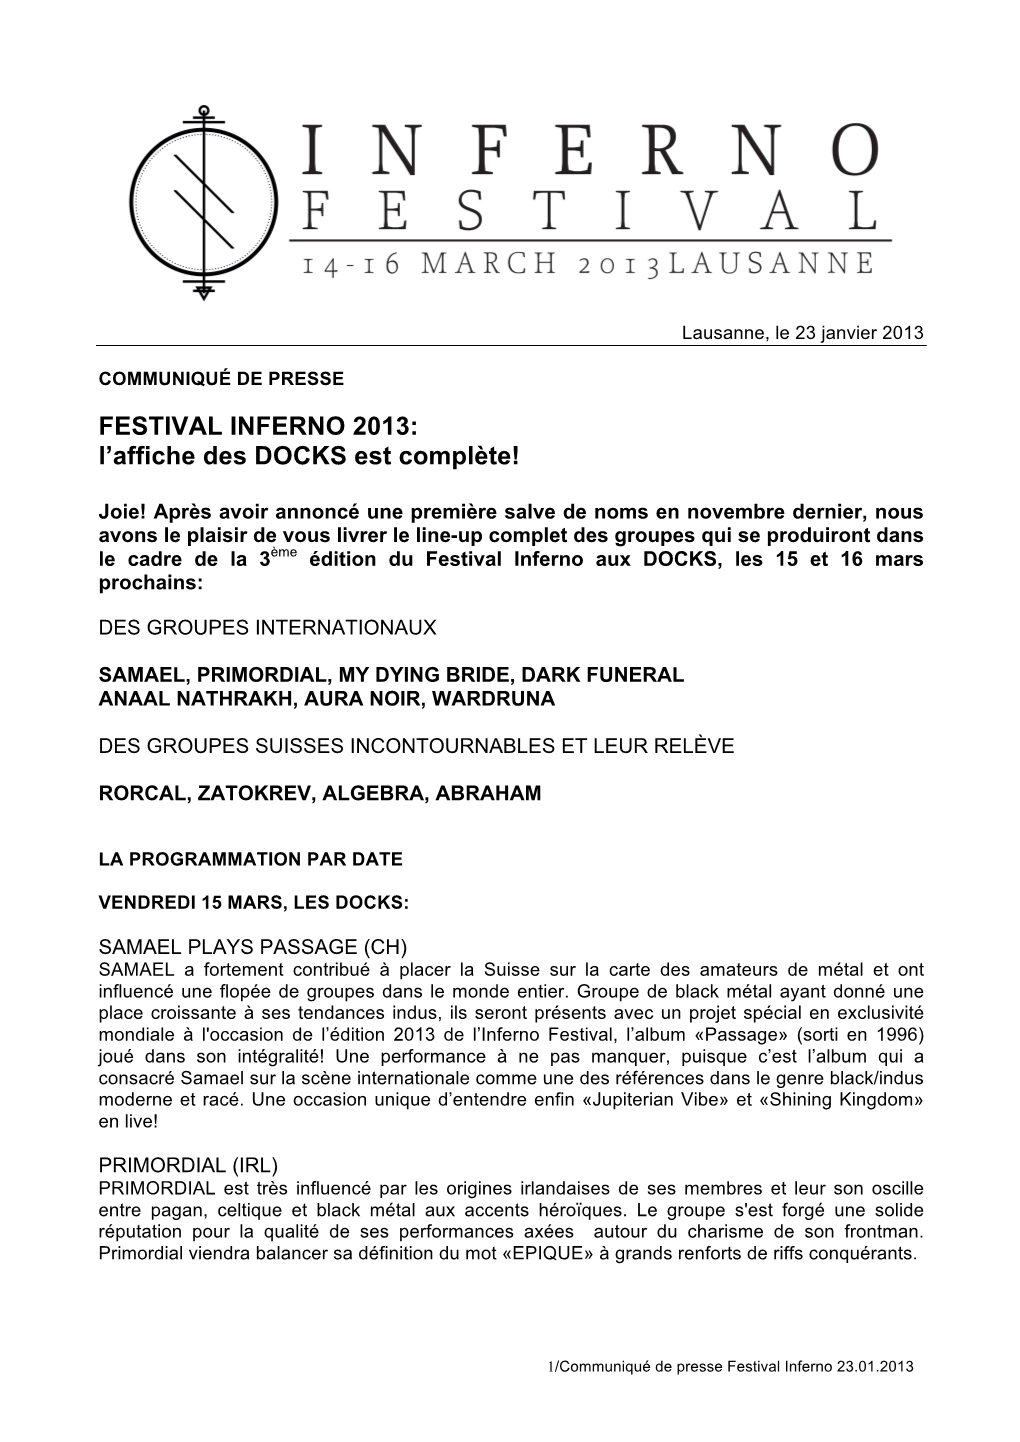 FESTIVAL INFERNO 2013: L’Affiche Des DOCKS Est Complète!